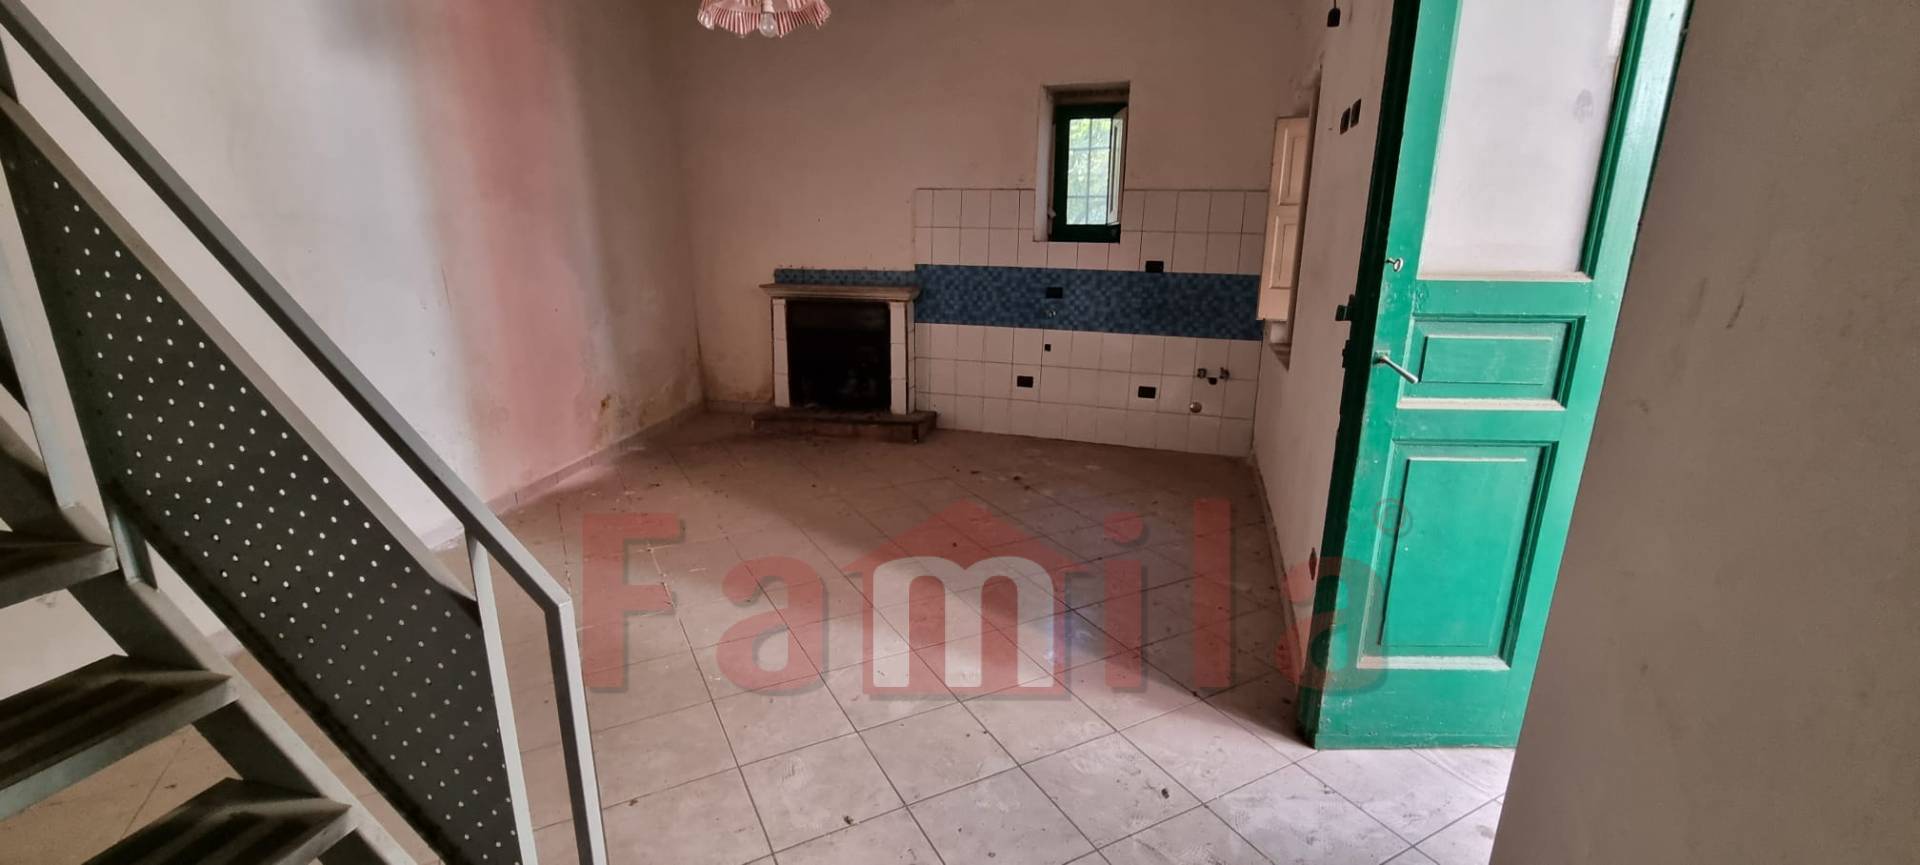 Appartamento in vendita a Quadrelle, 3 locali, prezzo € 21.000 | CambioCasa.it